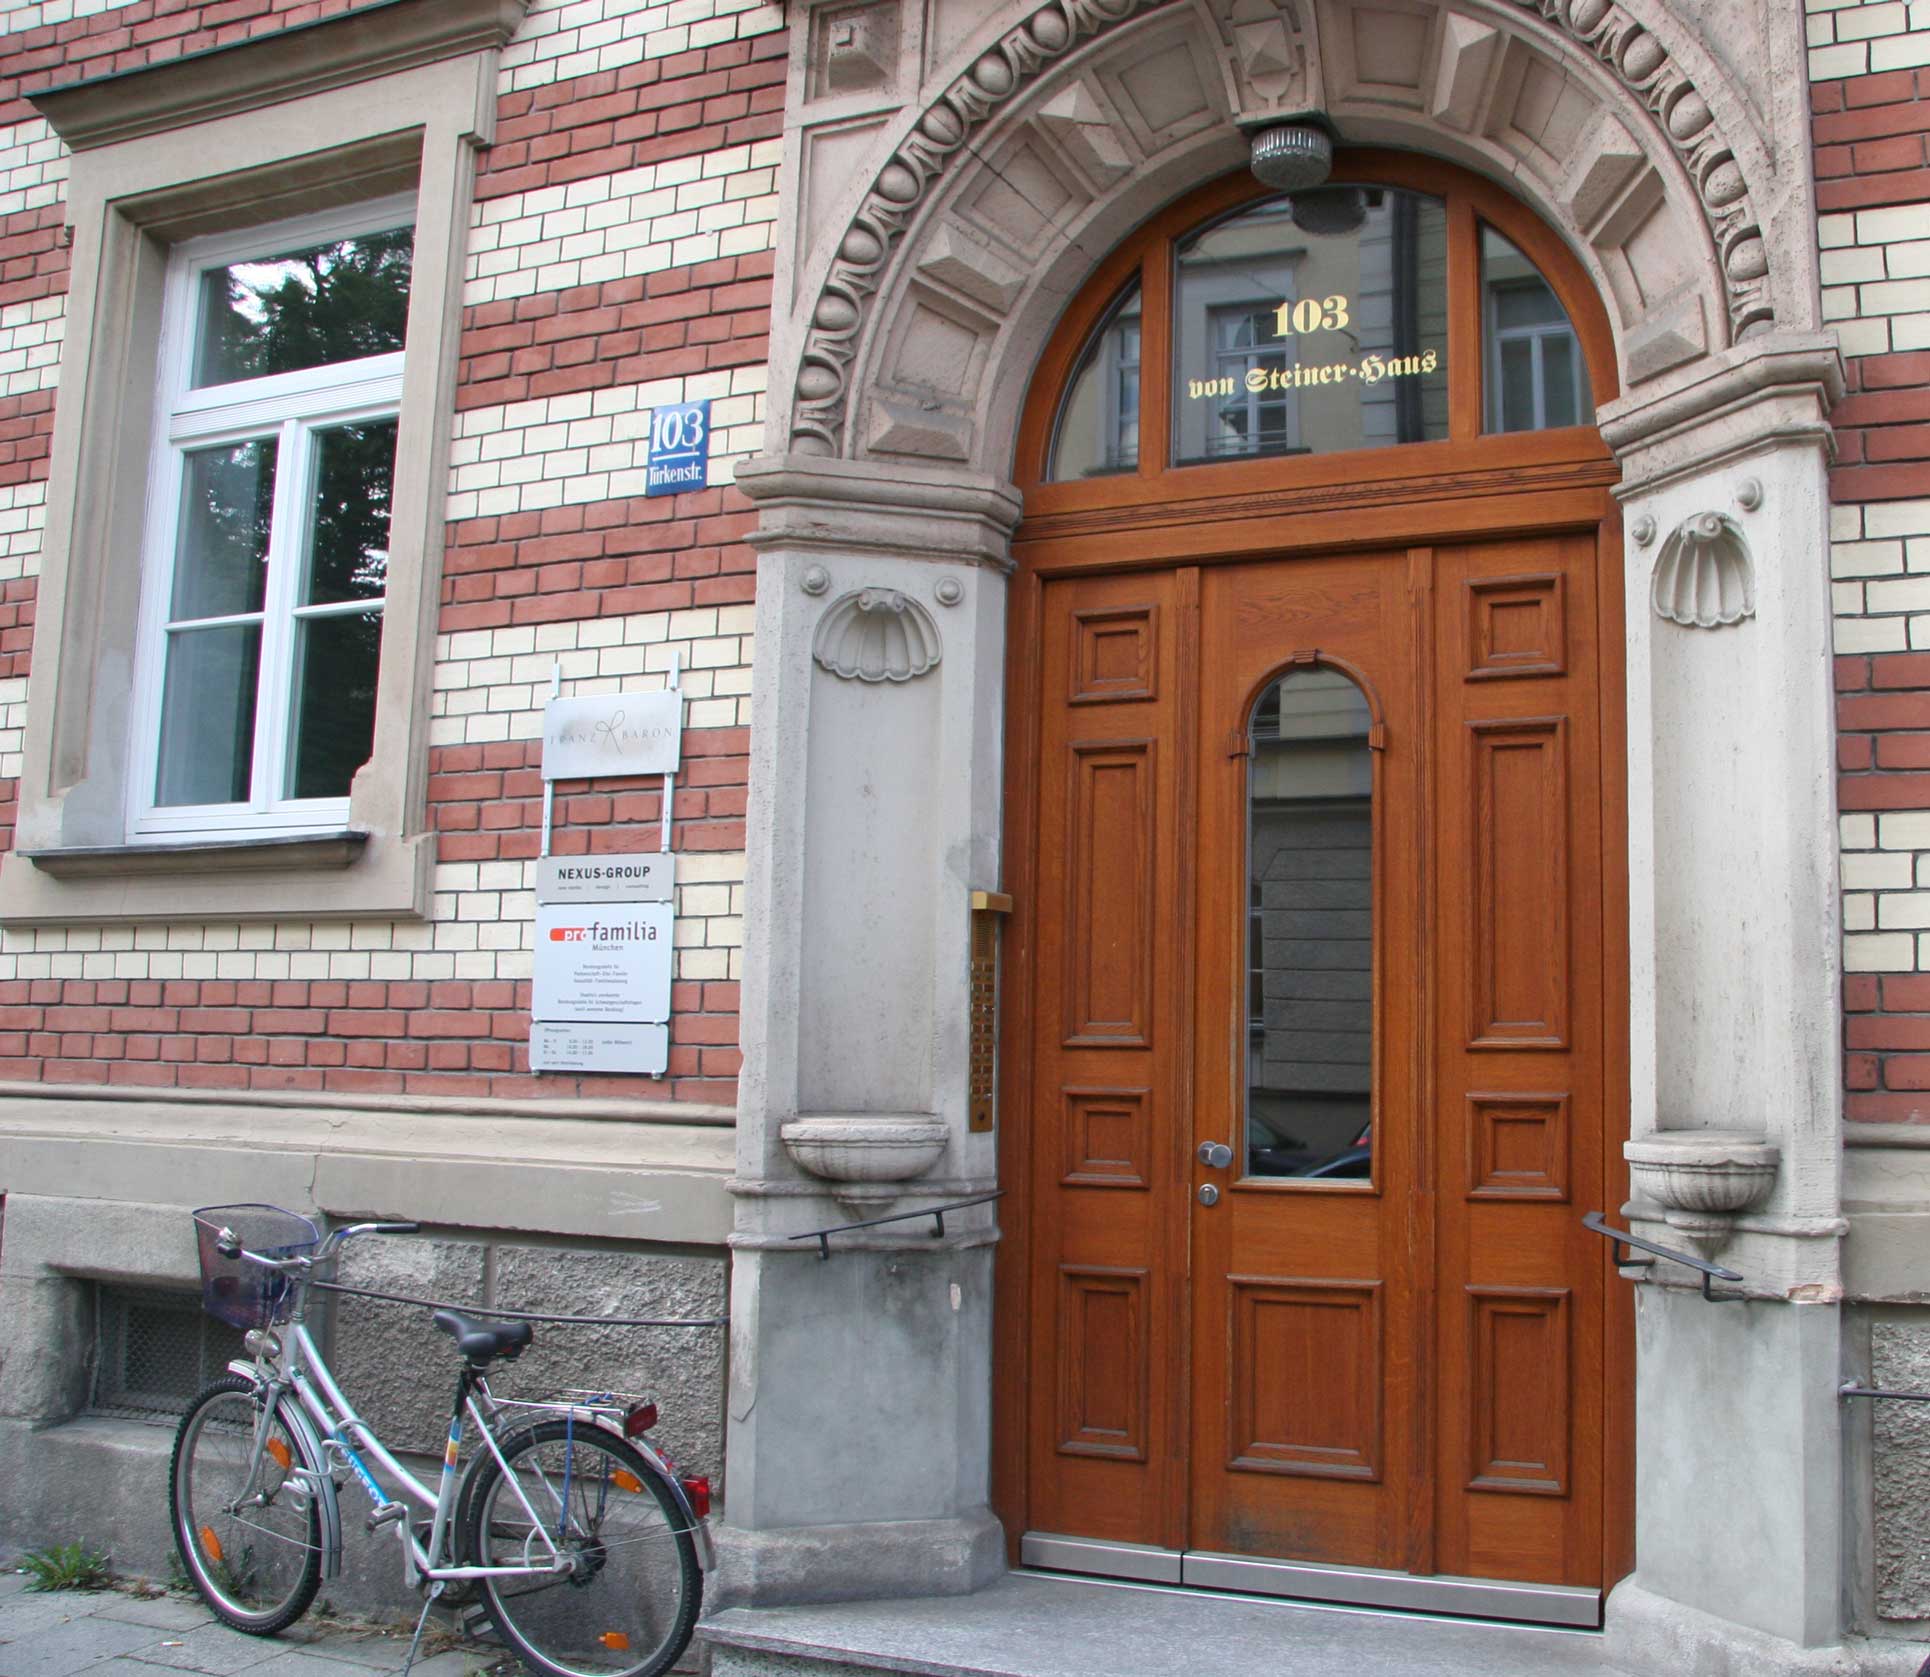 Holzhaustüre in eiche nach Historischer Anlehnung gefertigt , München Maxvorstdt Büro und Wohnhaus um 1889